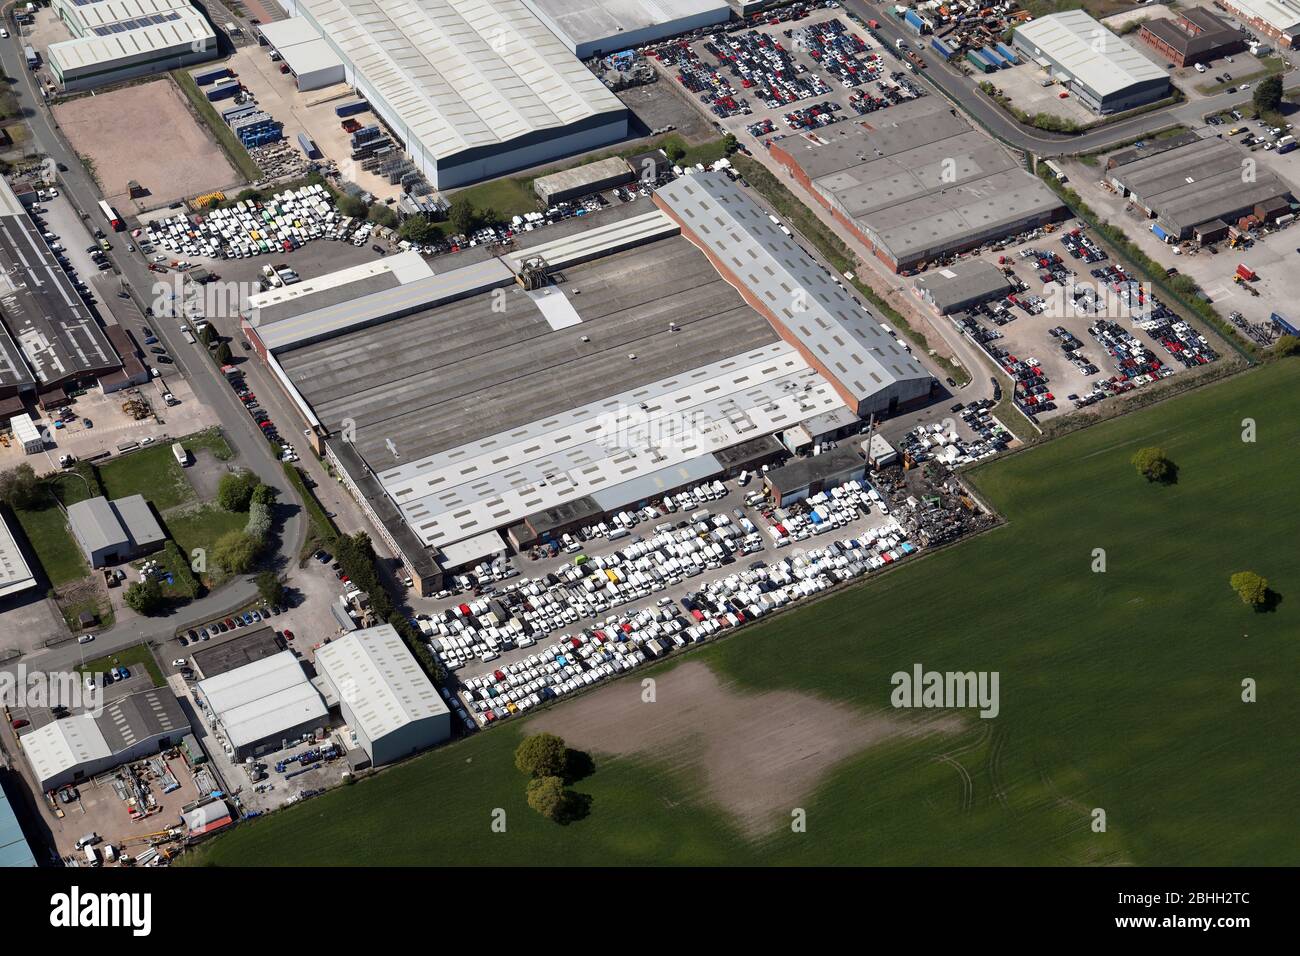 Vista aerea dell'unità SYNETIQ (rivenditore di salvataggio) su Winsford Industrial Estate, Cheshire, Regno Unito Foto Stock